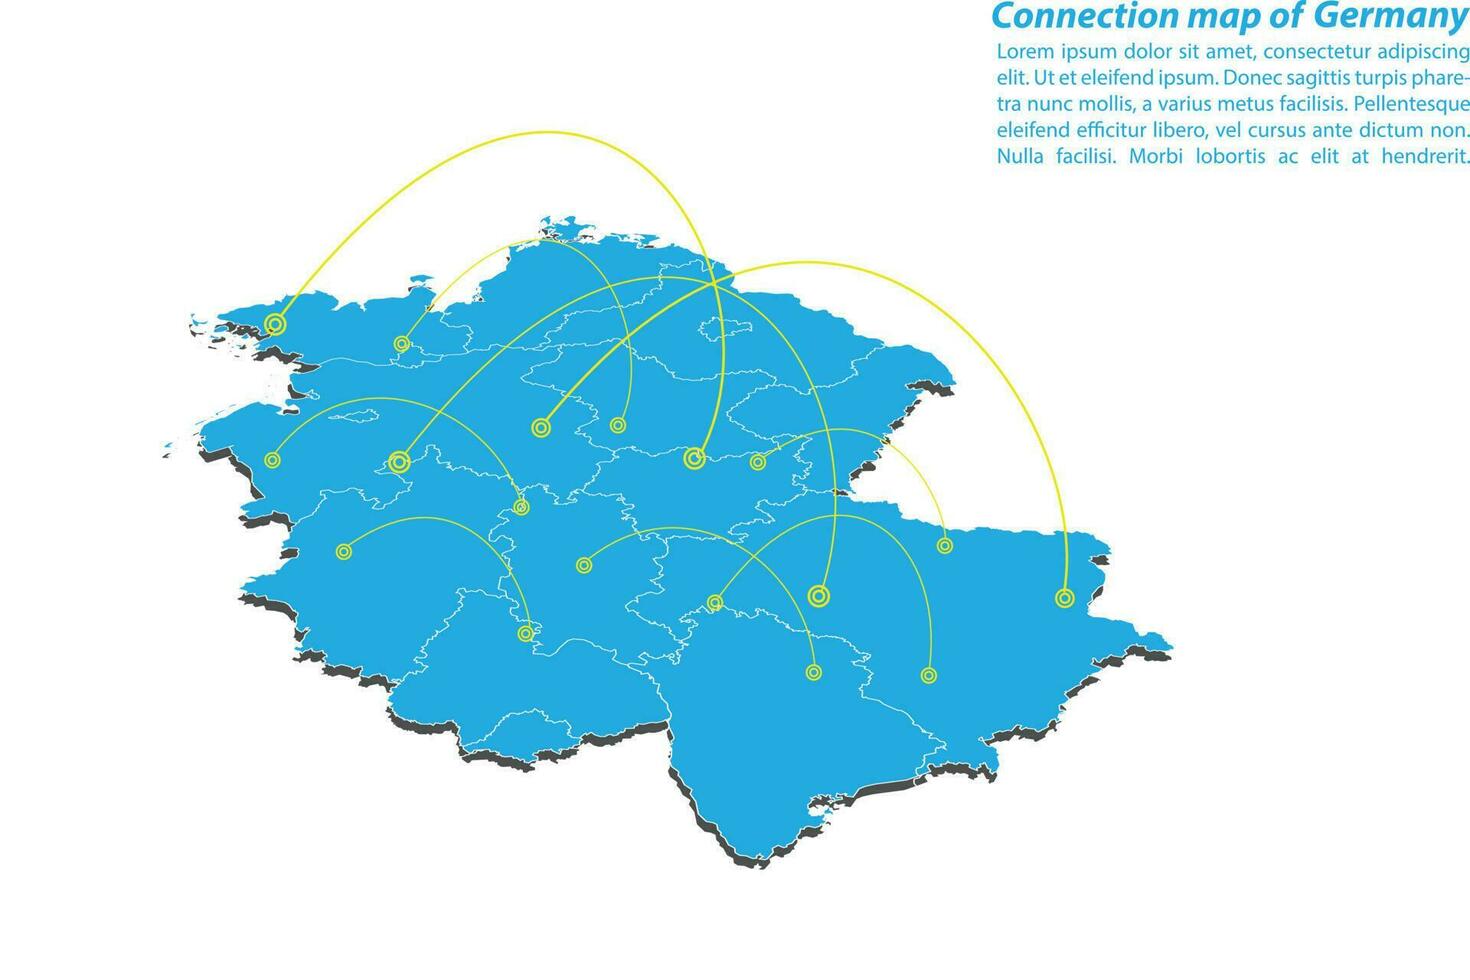 moderno do design de rede de conexões de mapa da alemanha, melhor conceito de internet do negócio de mapa da alemanha da série de conceitos, ponto de mapa e composição de linha. mapa infográfico. ilustração vetorial. vetor